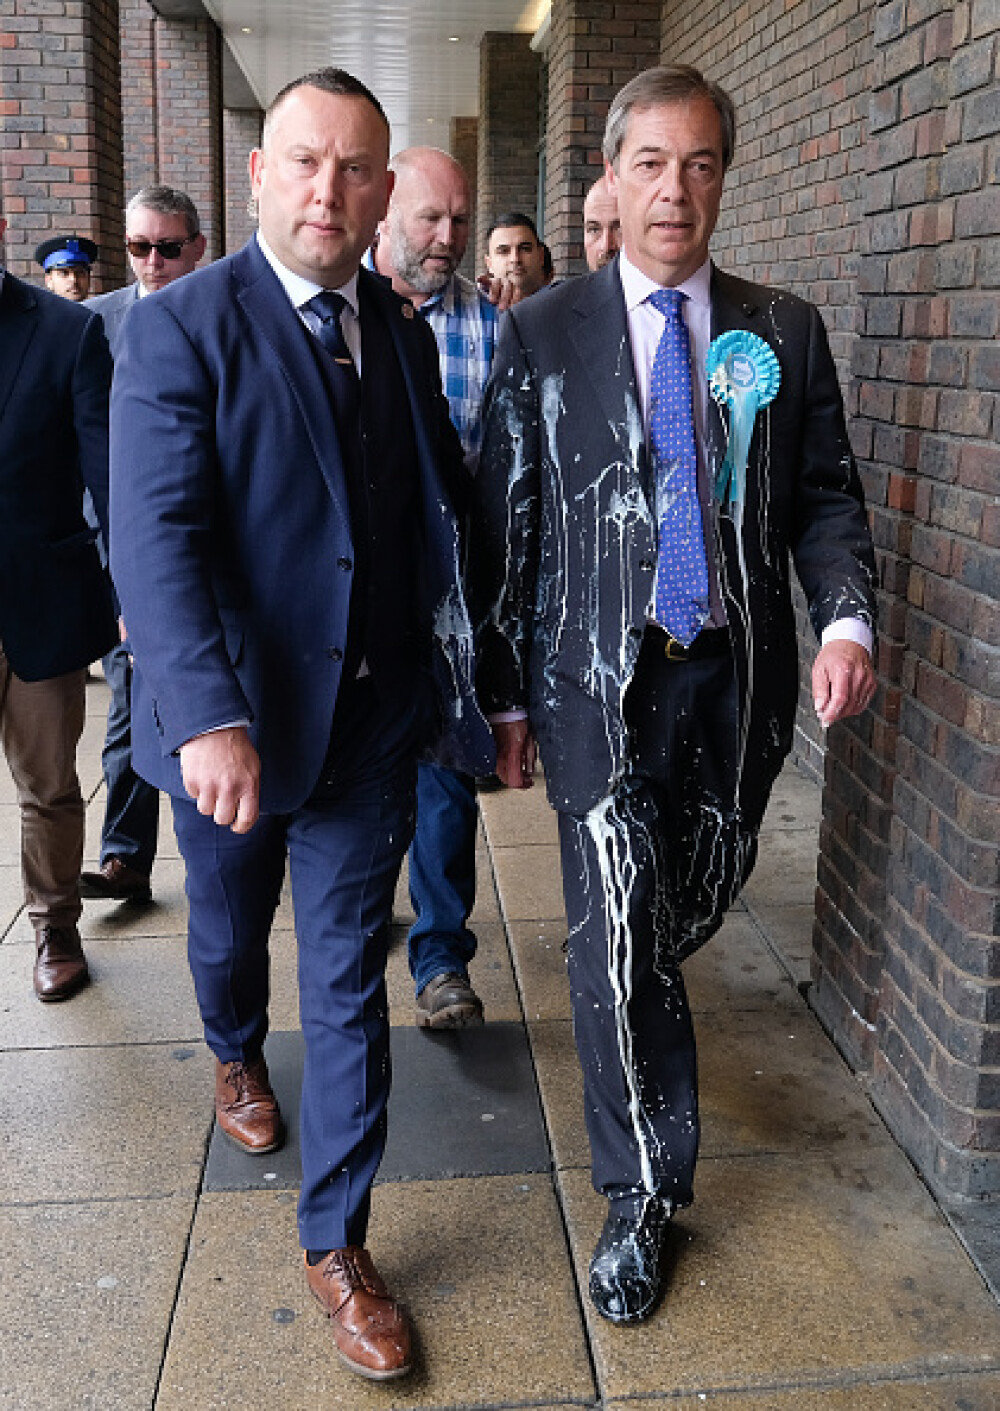 Nigel Farage, furios după ce un protestatar a aruncat un milkshake pe el. VIDEO - Imaginea 1